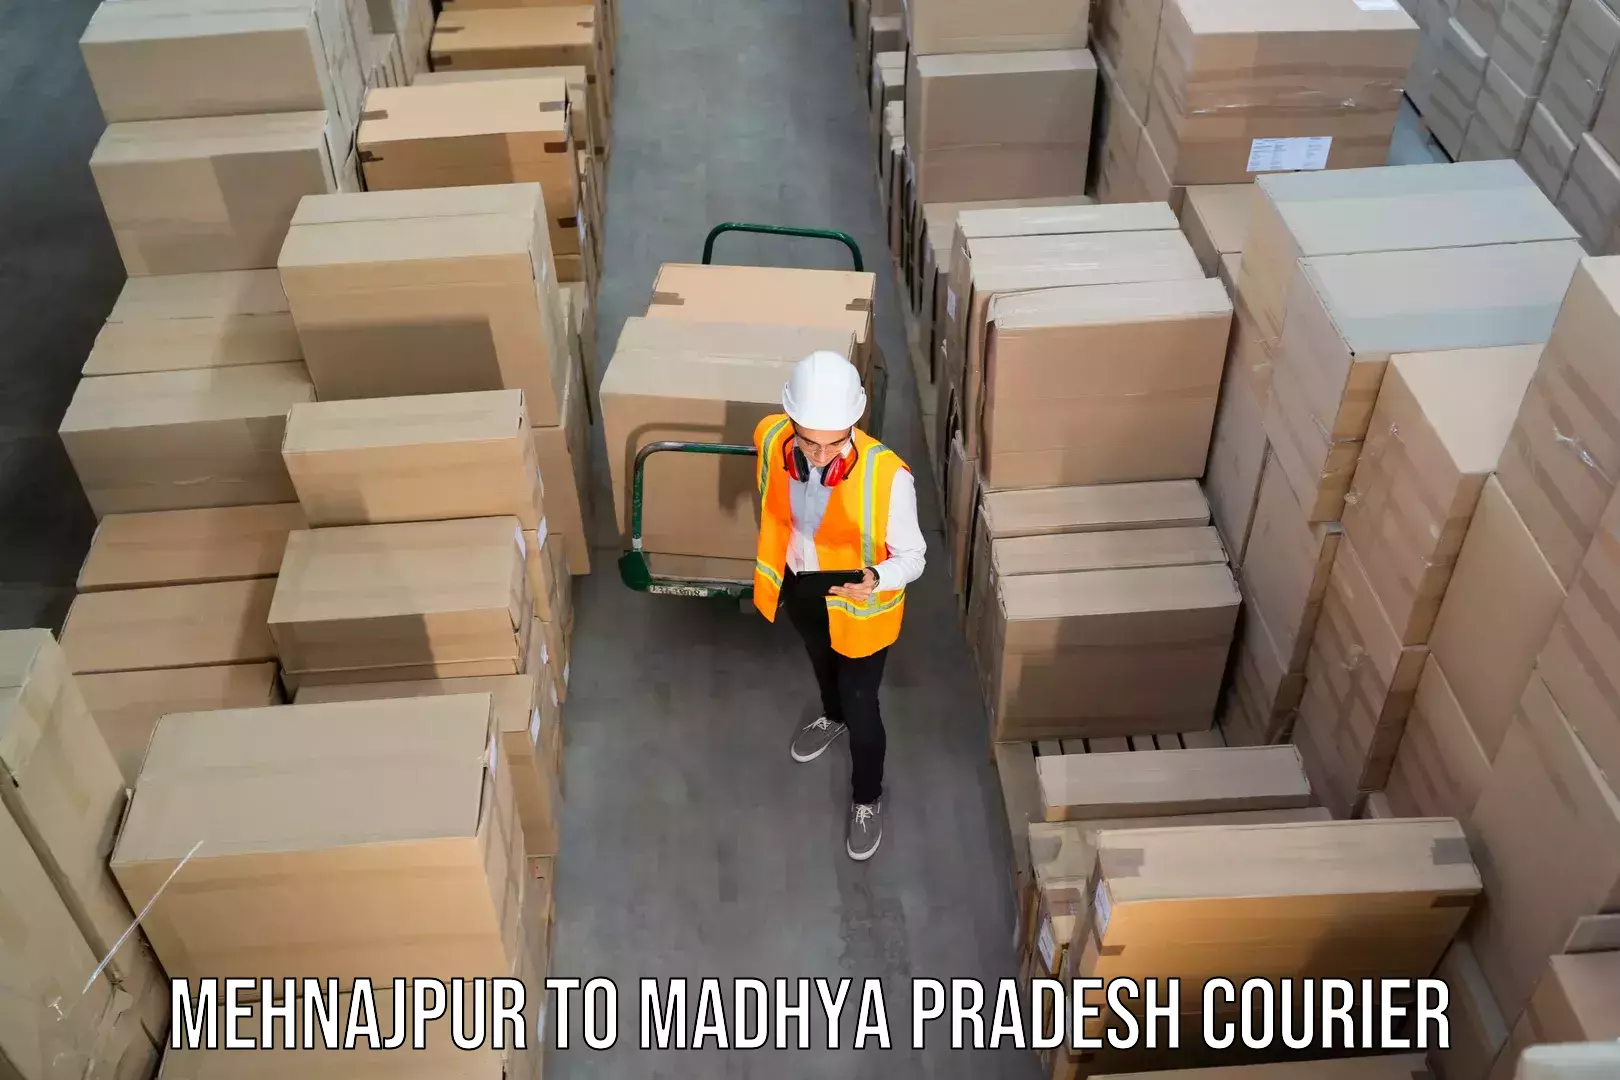 Next-day freight services Mehnajpur to Vidisha